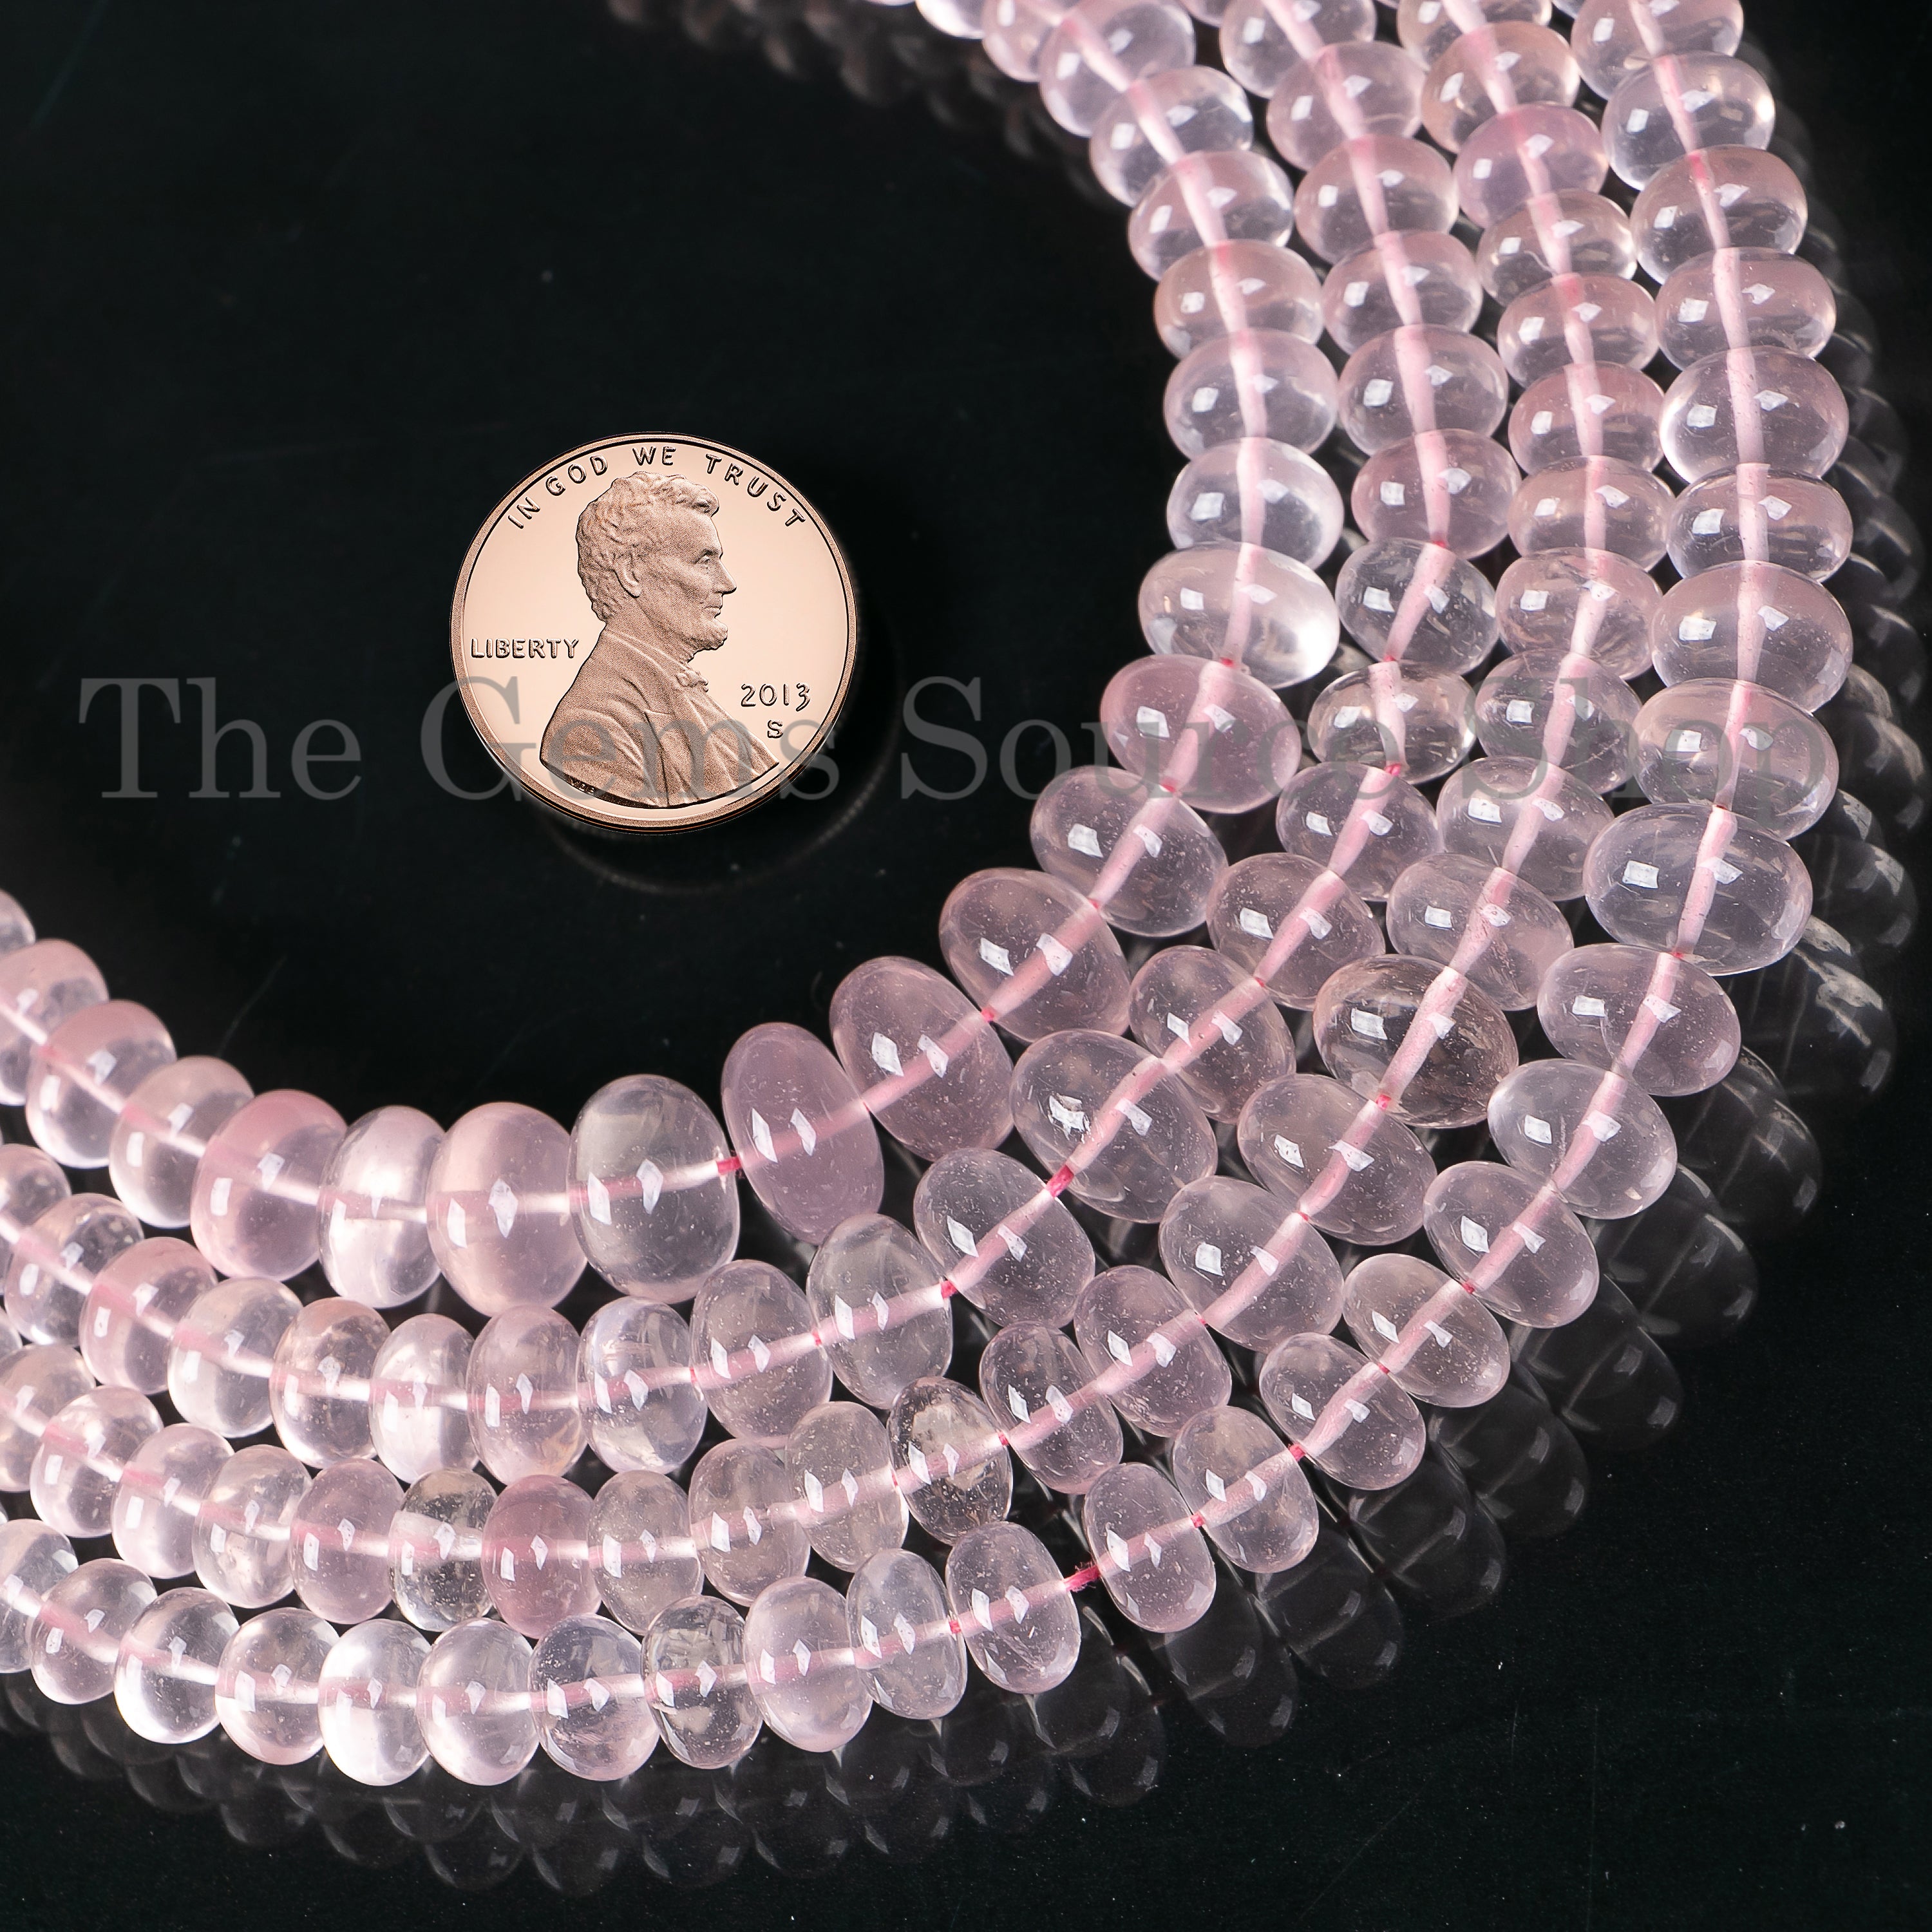 Rose Quartz Smooth Rondelle Beads, 5-8mm Rose Quartz Rondelle Beads, Rondelle Beads, Rose Quartz Smooth Beads, Rose Quartz Beads